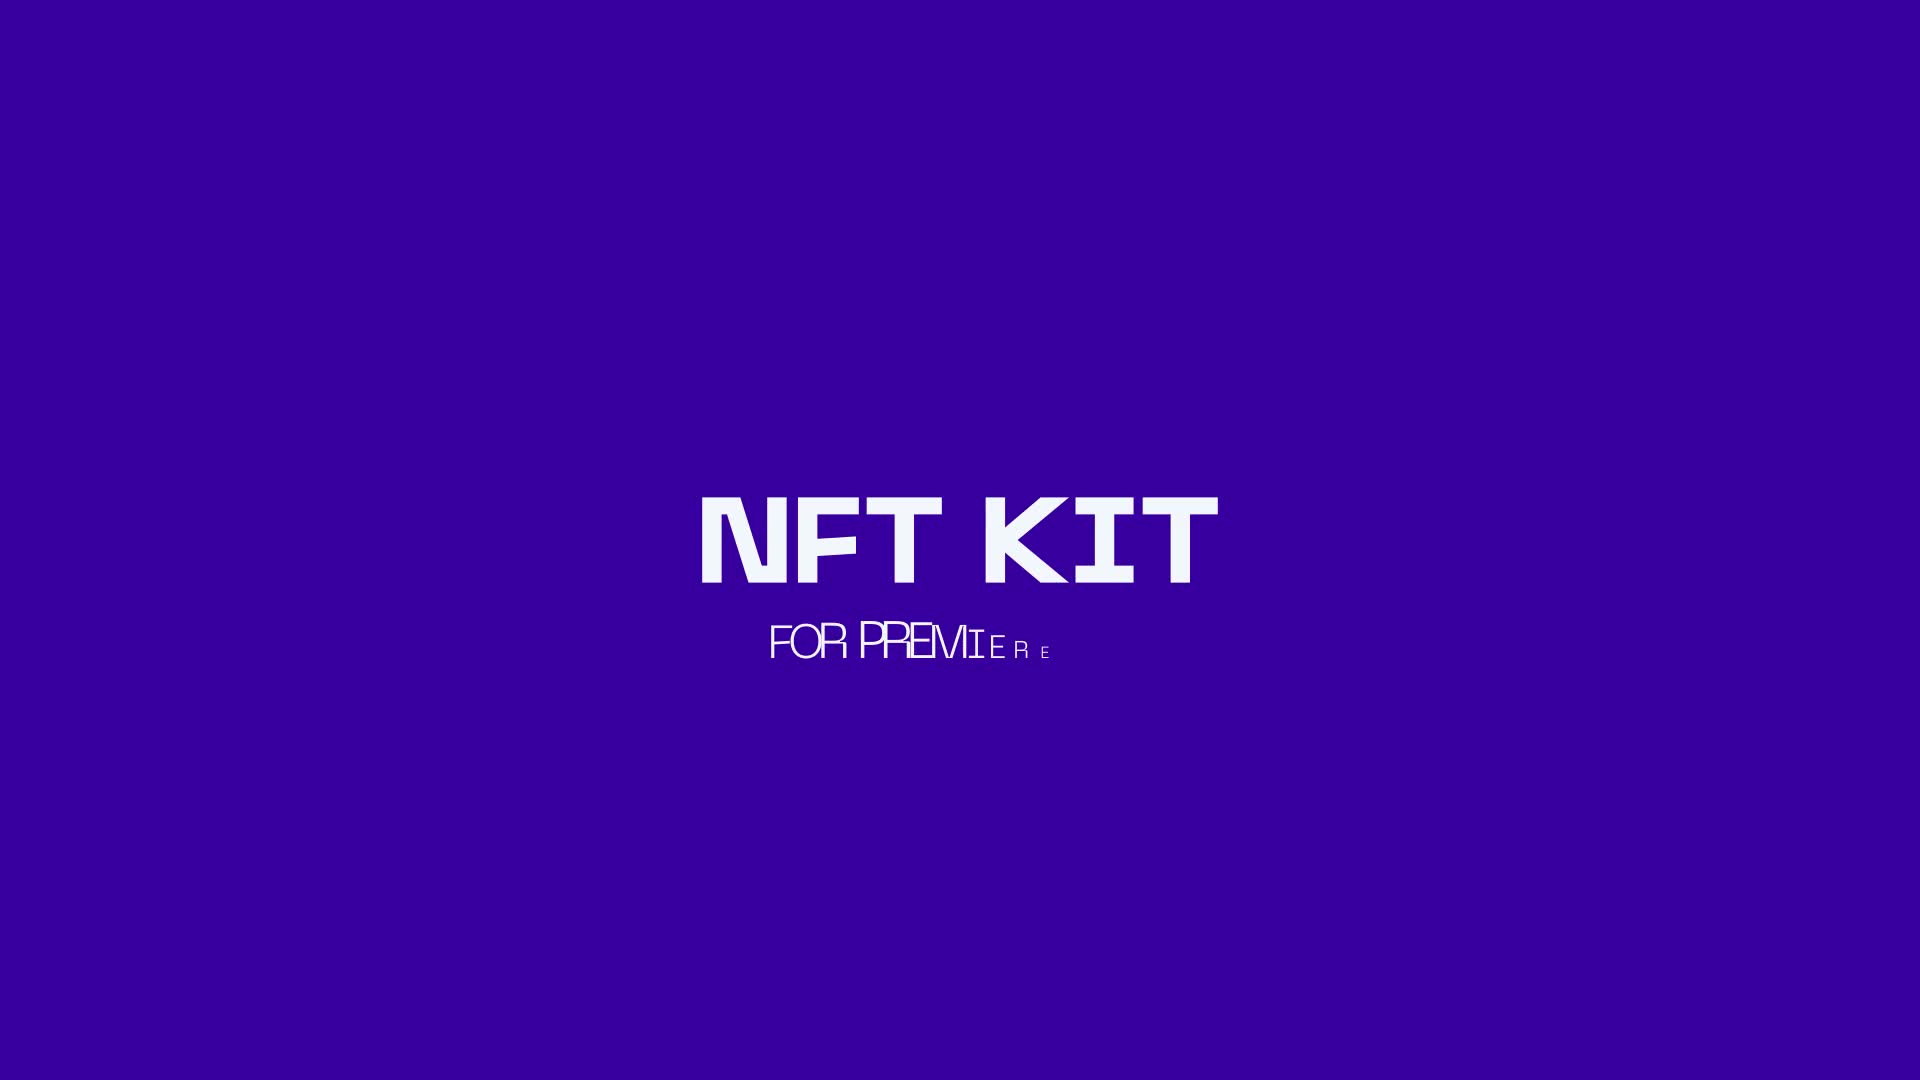 NFT KIT for Premiere Pro Videohive 37362891 Premiere Pro Image 1